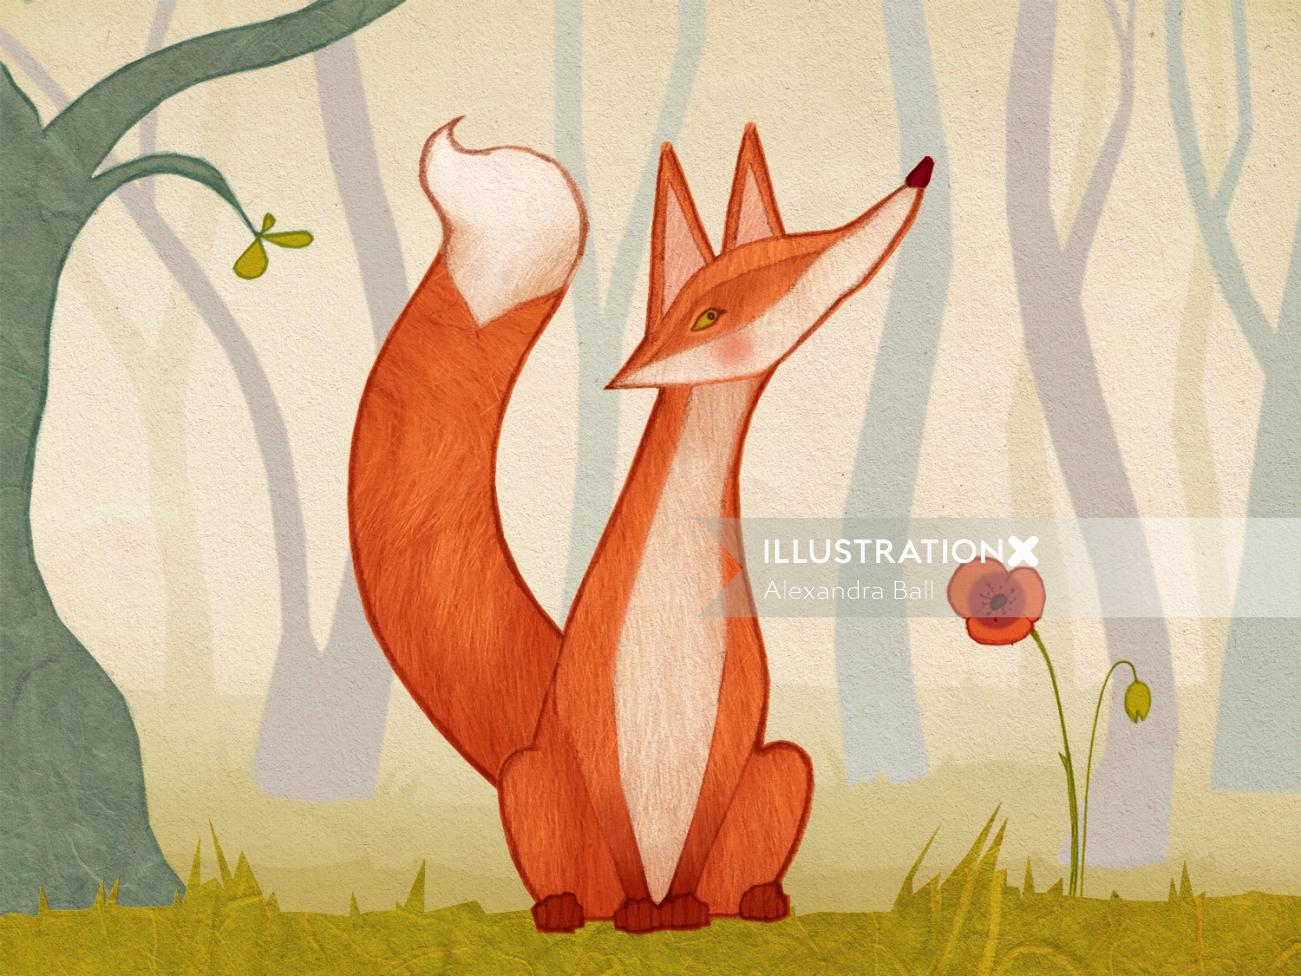 Alexandra Ball: Los animales del bosque cubierto de musgo Aplicación: Fox